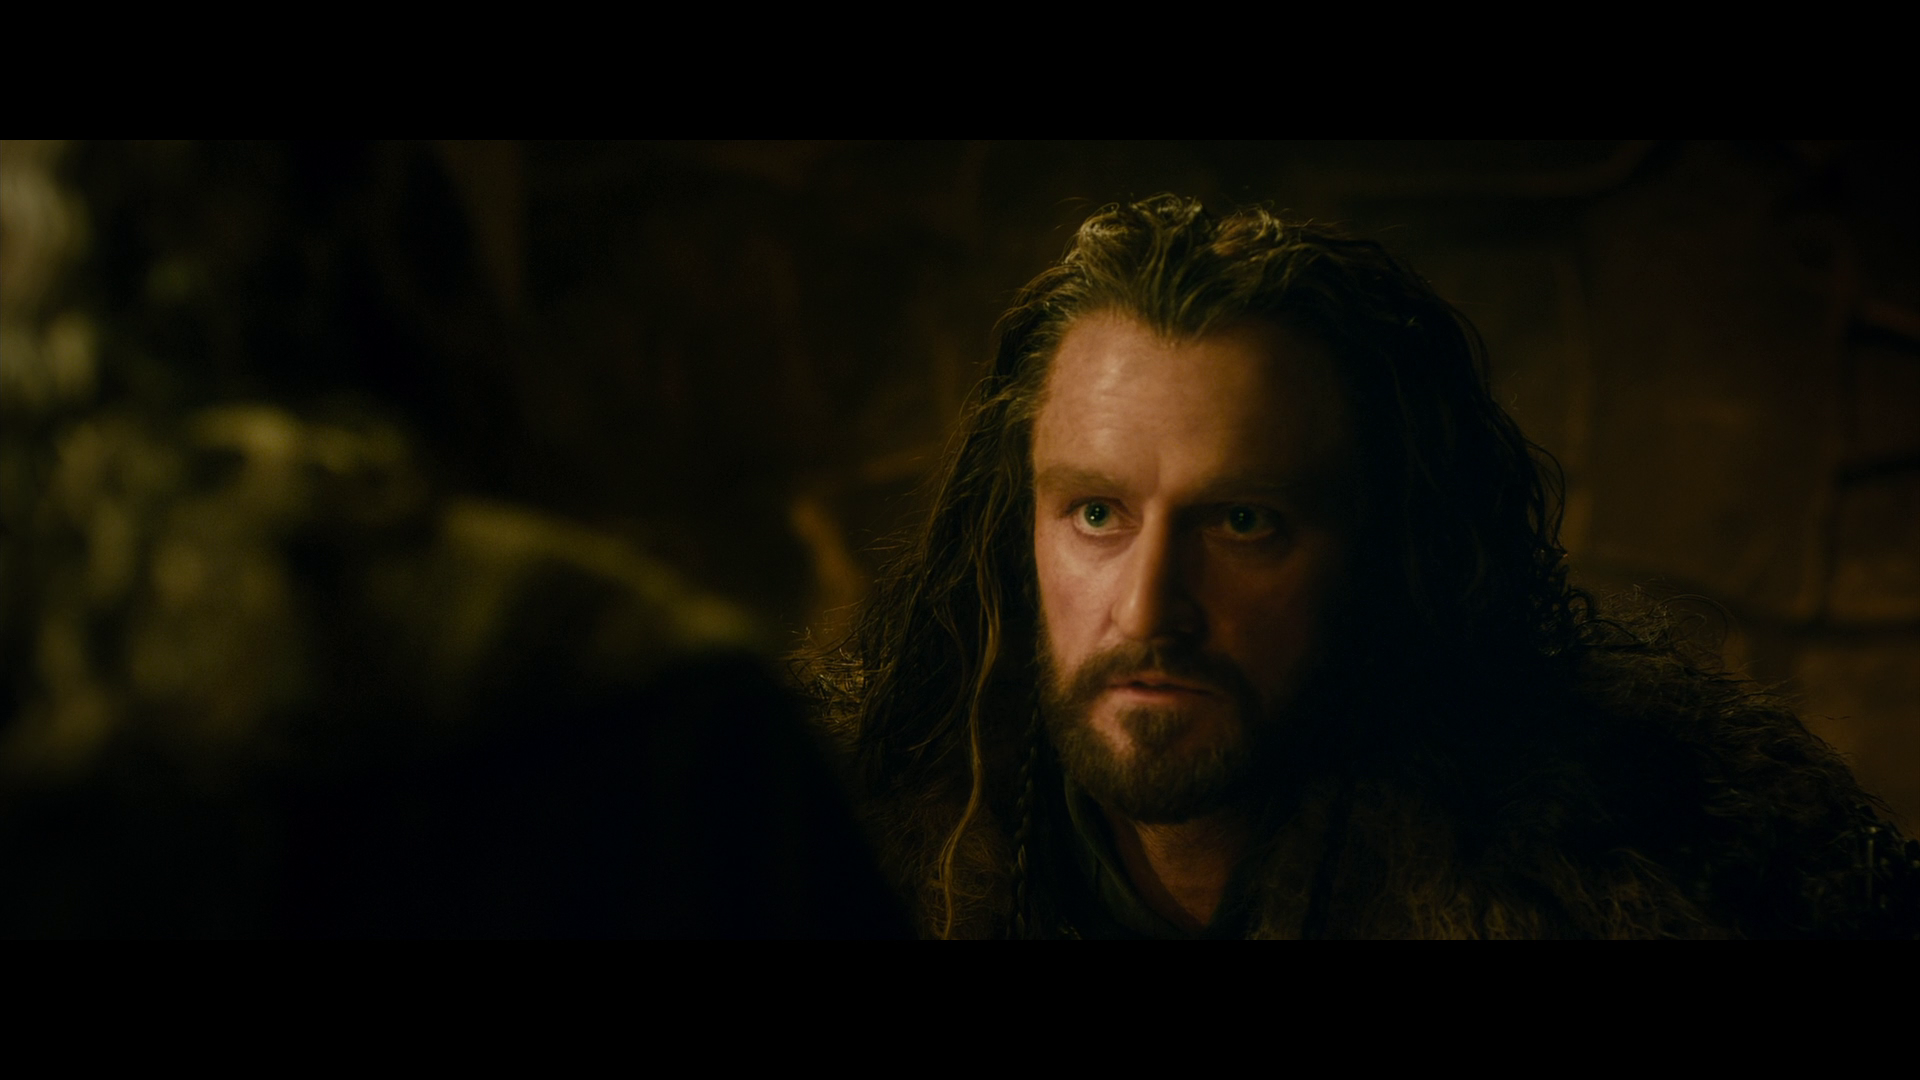 [霍比特人2].The.Hobbit.The.Desolation.of.Smaug.2013.EXTENDED.BluRay.1080p.AVC.DTS-HD.MA.7.1-Tay   41.01G- u2 n) A4 b( T-13.png